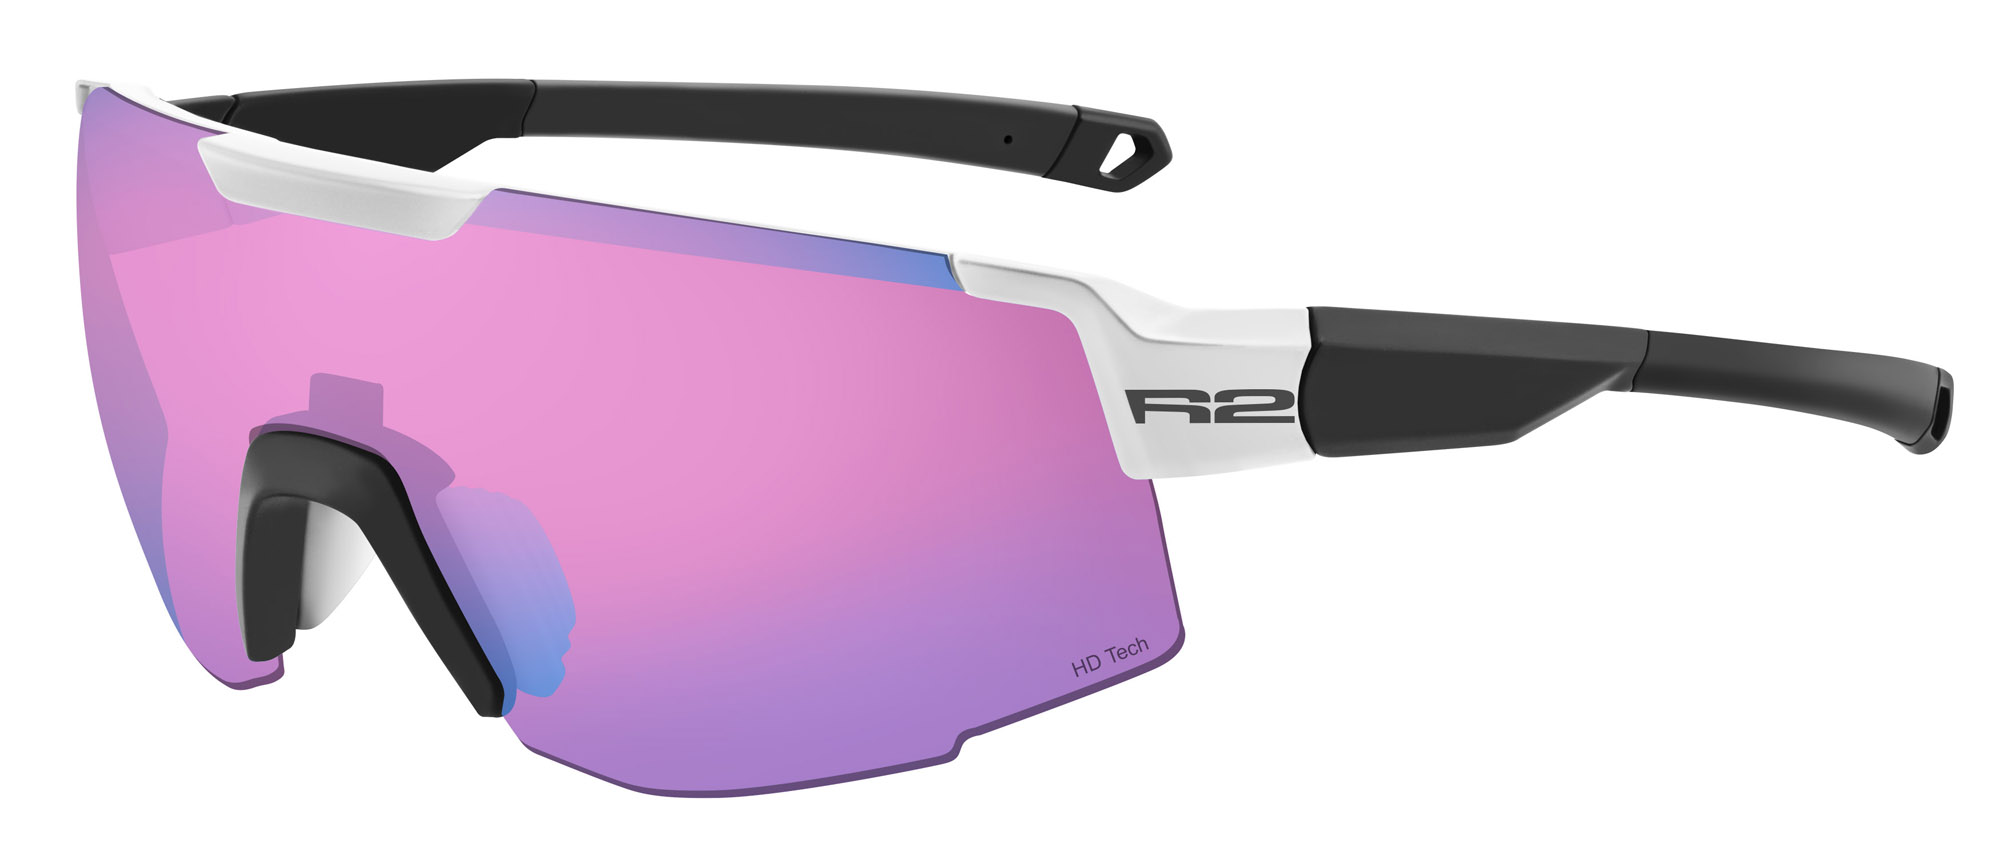 HD sportovní sluneční brýle R2 EDGE AT101B - standard